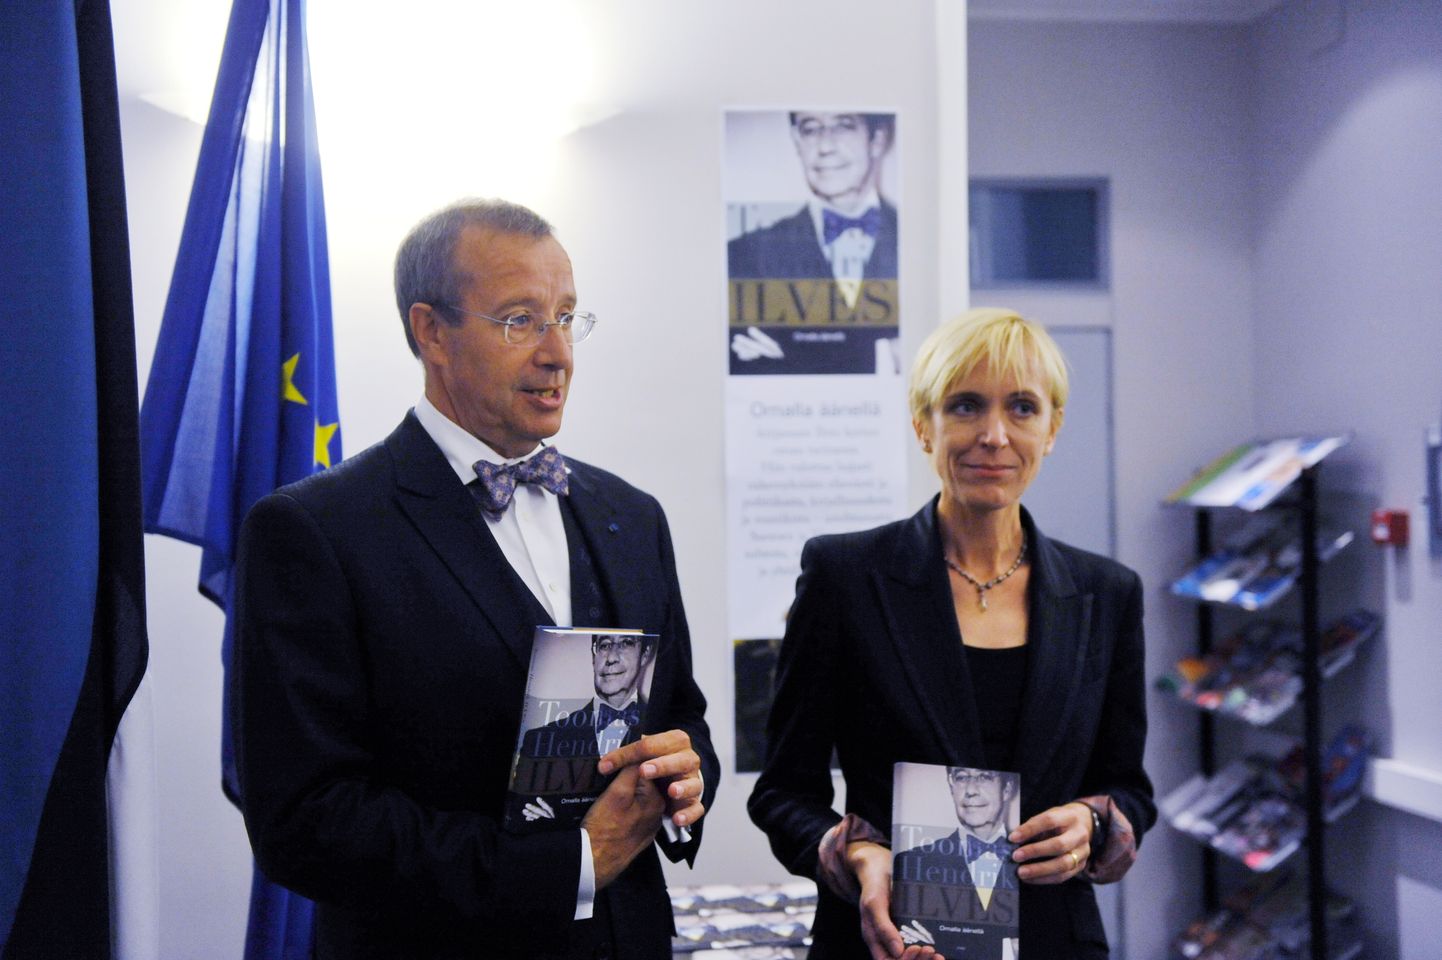 President T.H. Ilvese raamatu esitlus Helsingis, Eesti saatkonnas. T.H. Ilves, Iivi Anna Masso.